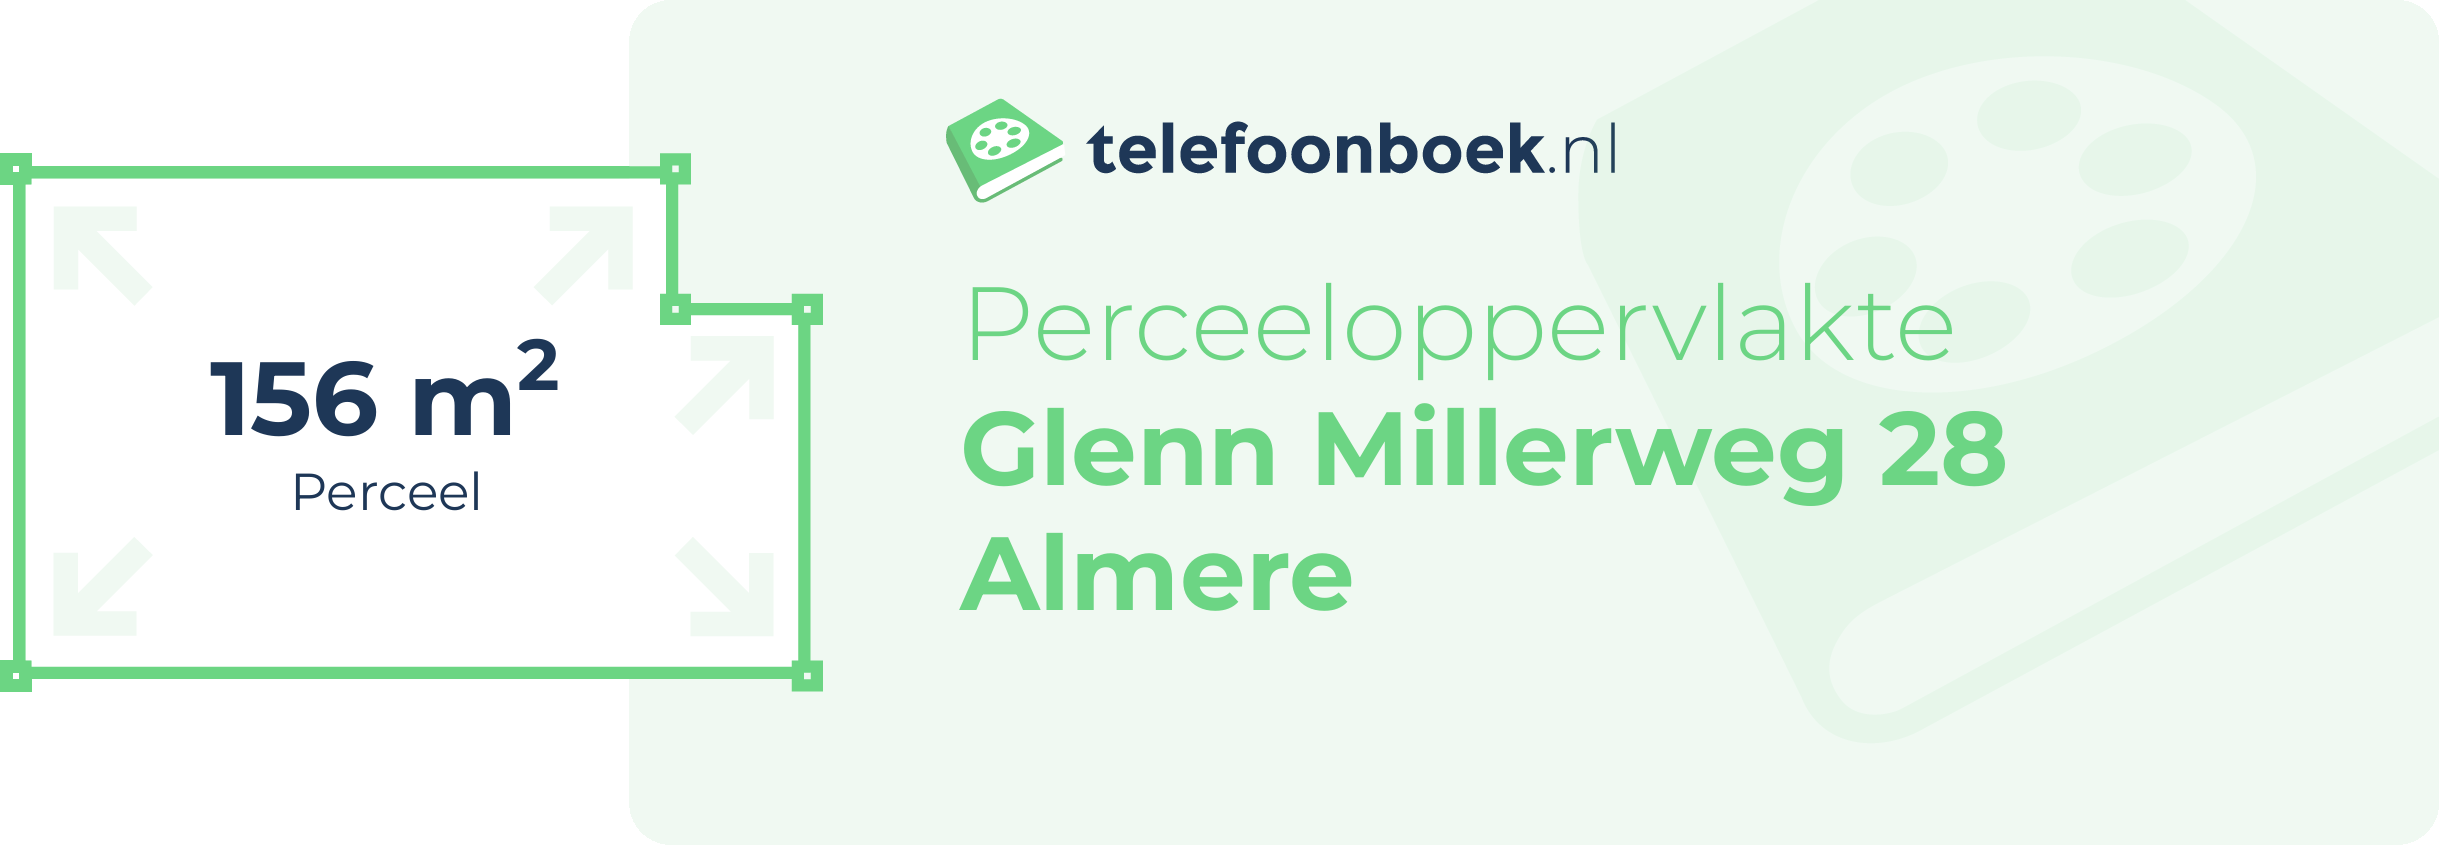 Perceeloppervlakte Glenn Millerweg 28 Almere